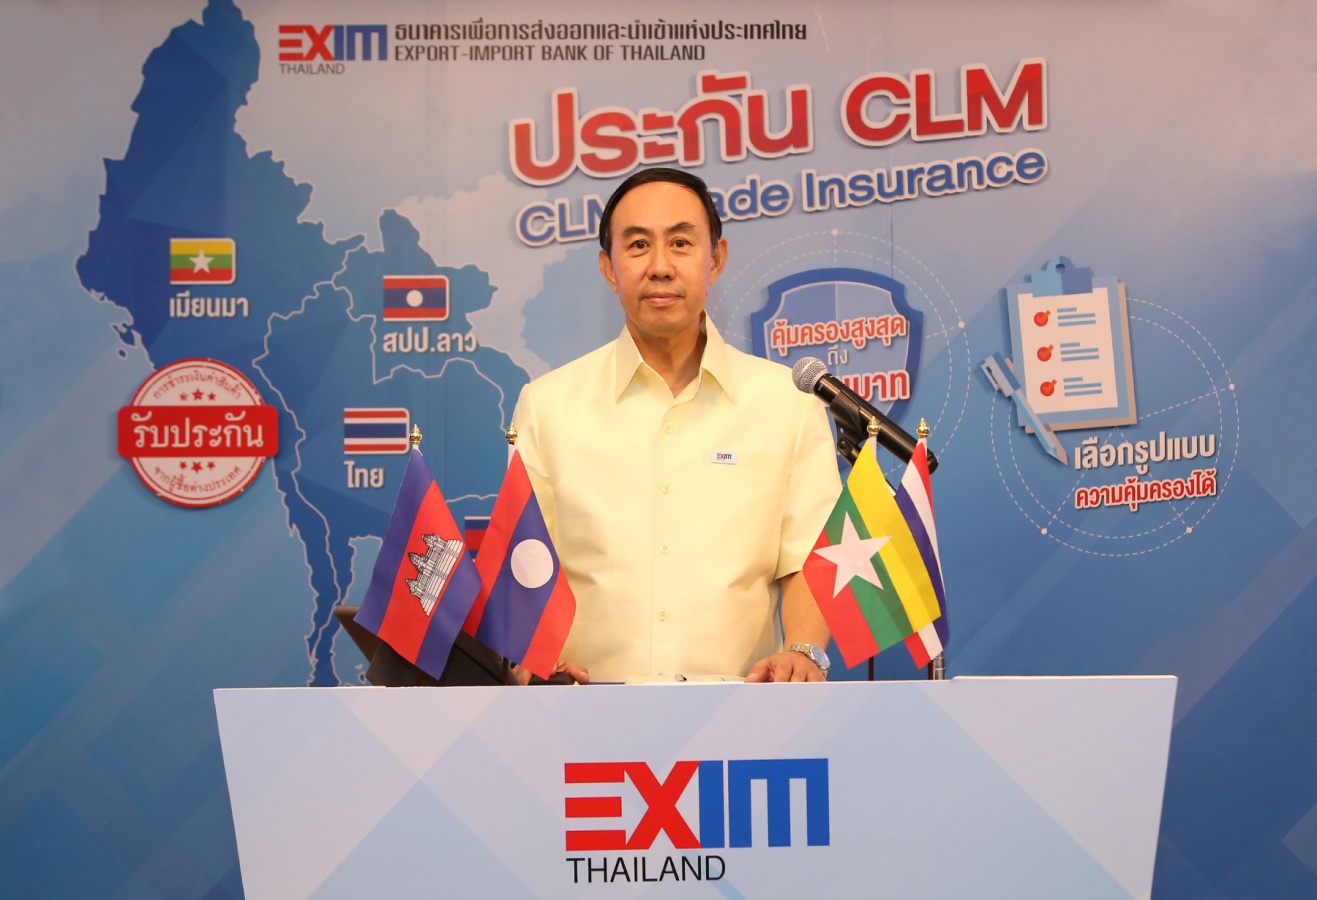 EXIM BANK เปิดบริการ "ประกัน CLM" คุ้มครองความเสี่ยงผู้ส่งออก SMEs ไปตลาดกัมพูชา สปป.ลาว และเมียนมา